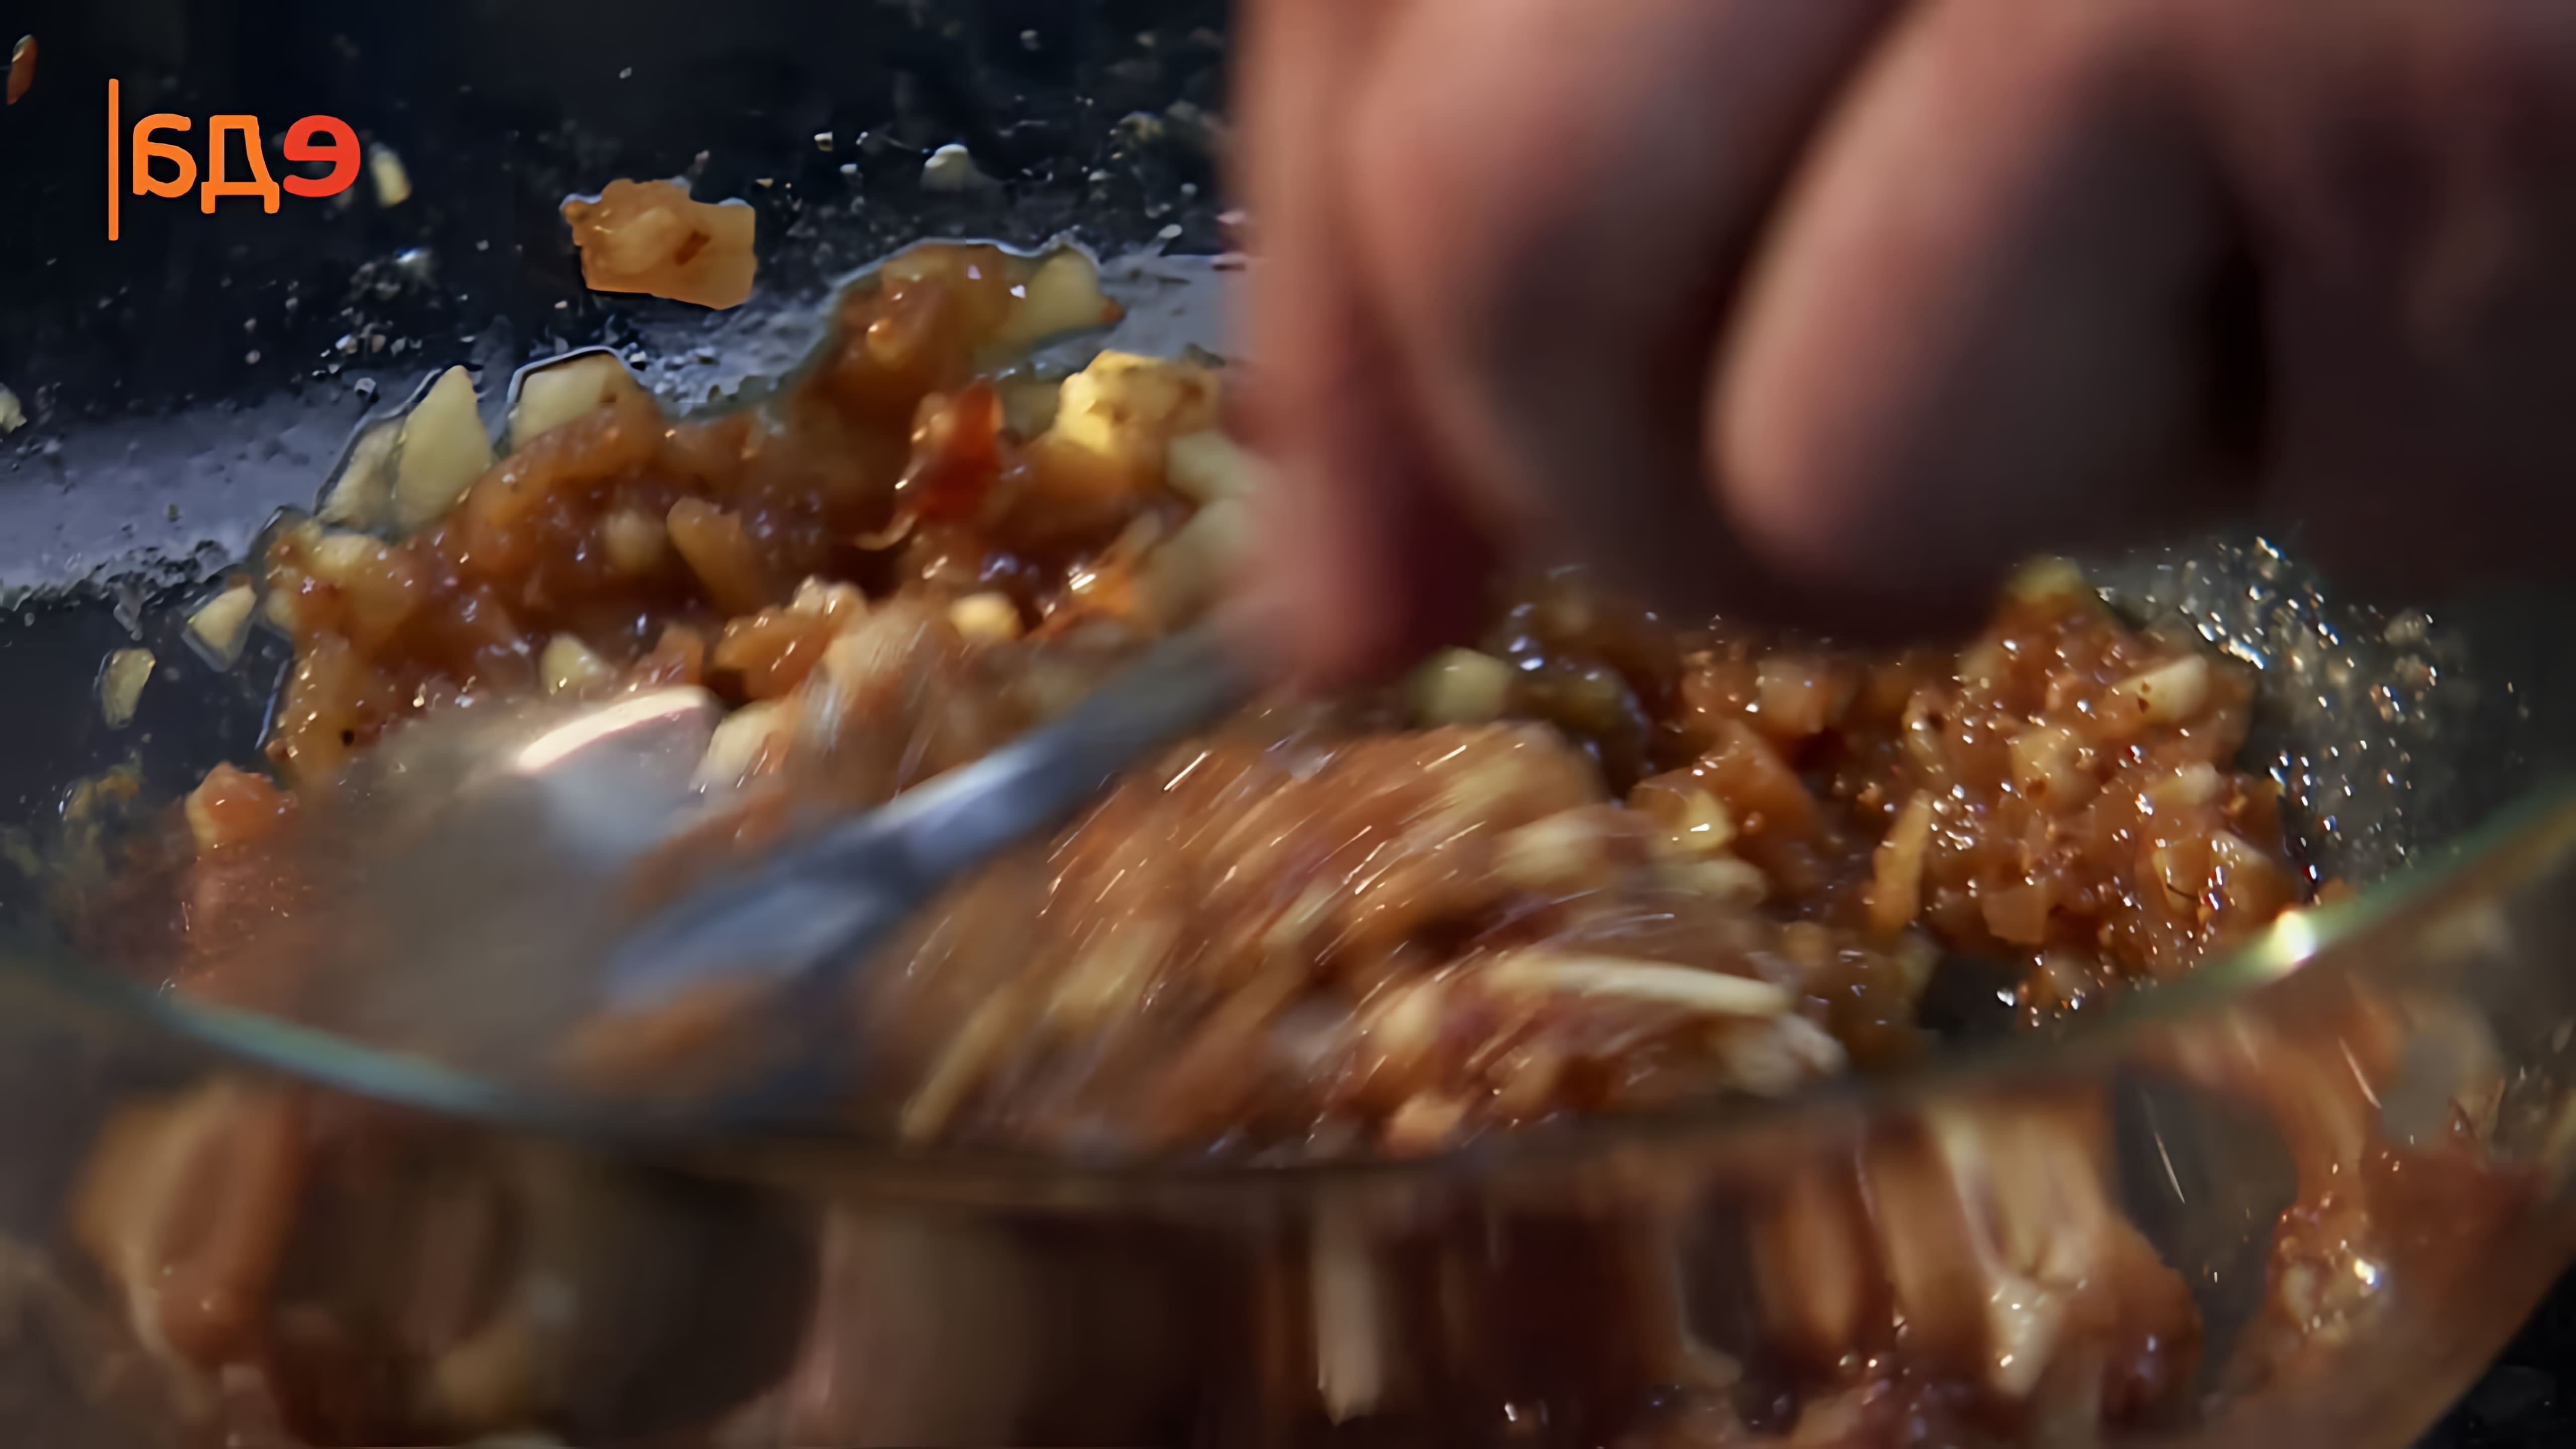 В этом видео демонстрируется процесс приготовления двух видов чатни - из инжира и из фиников